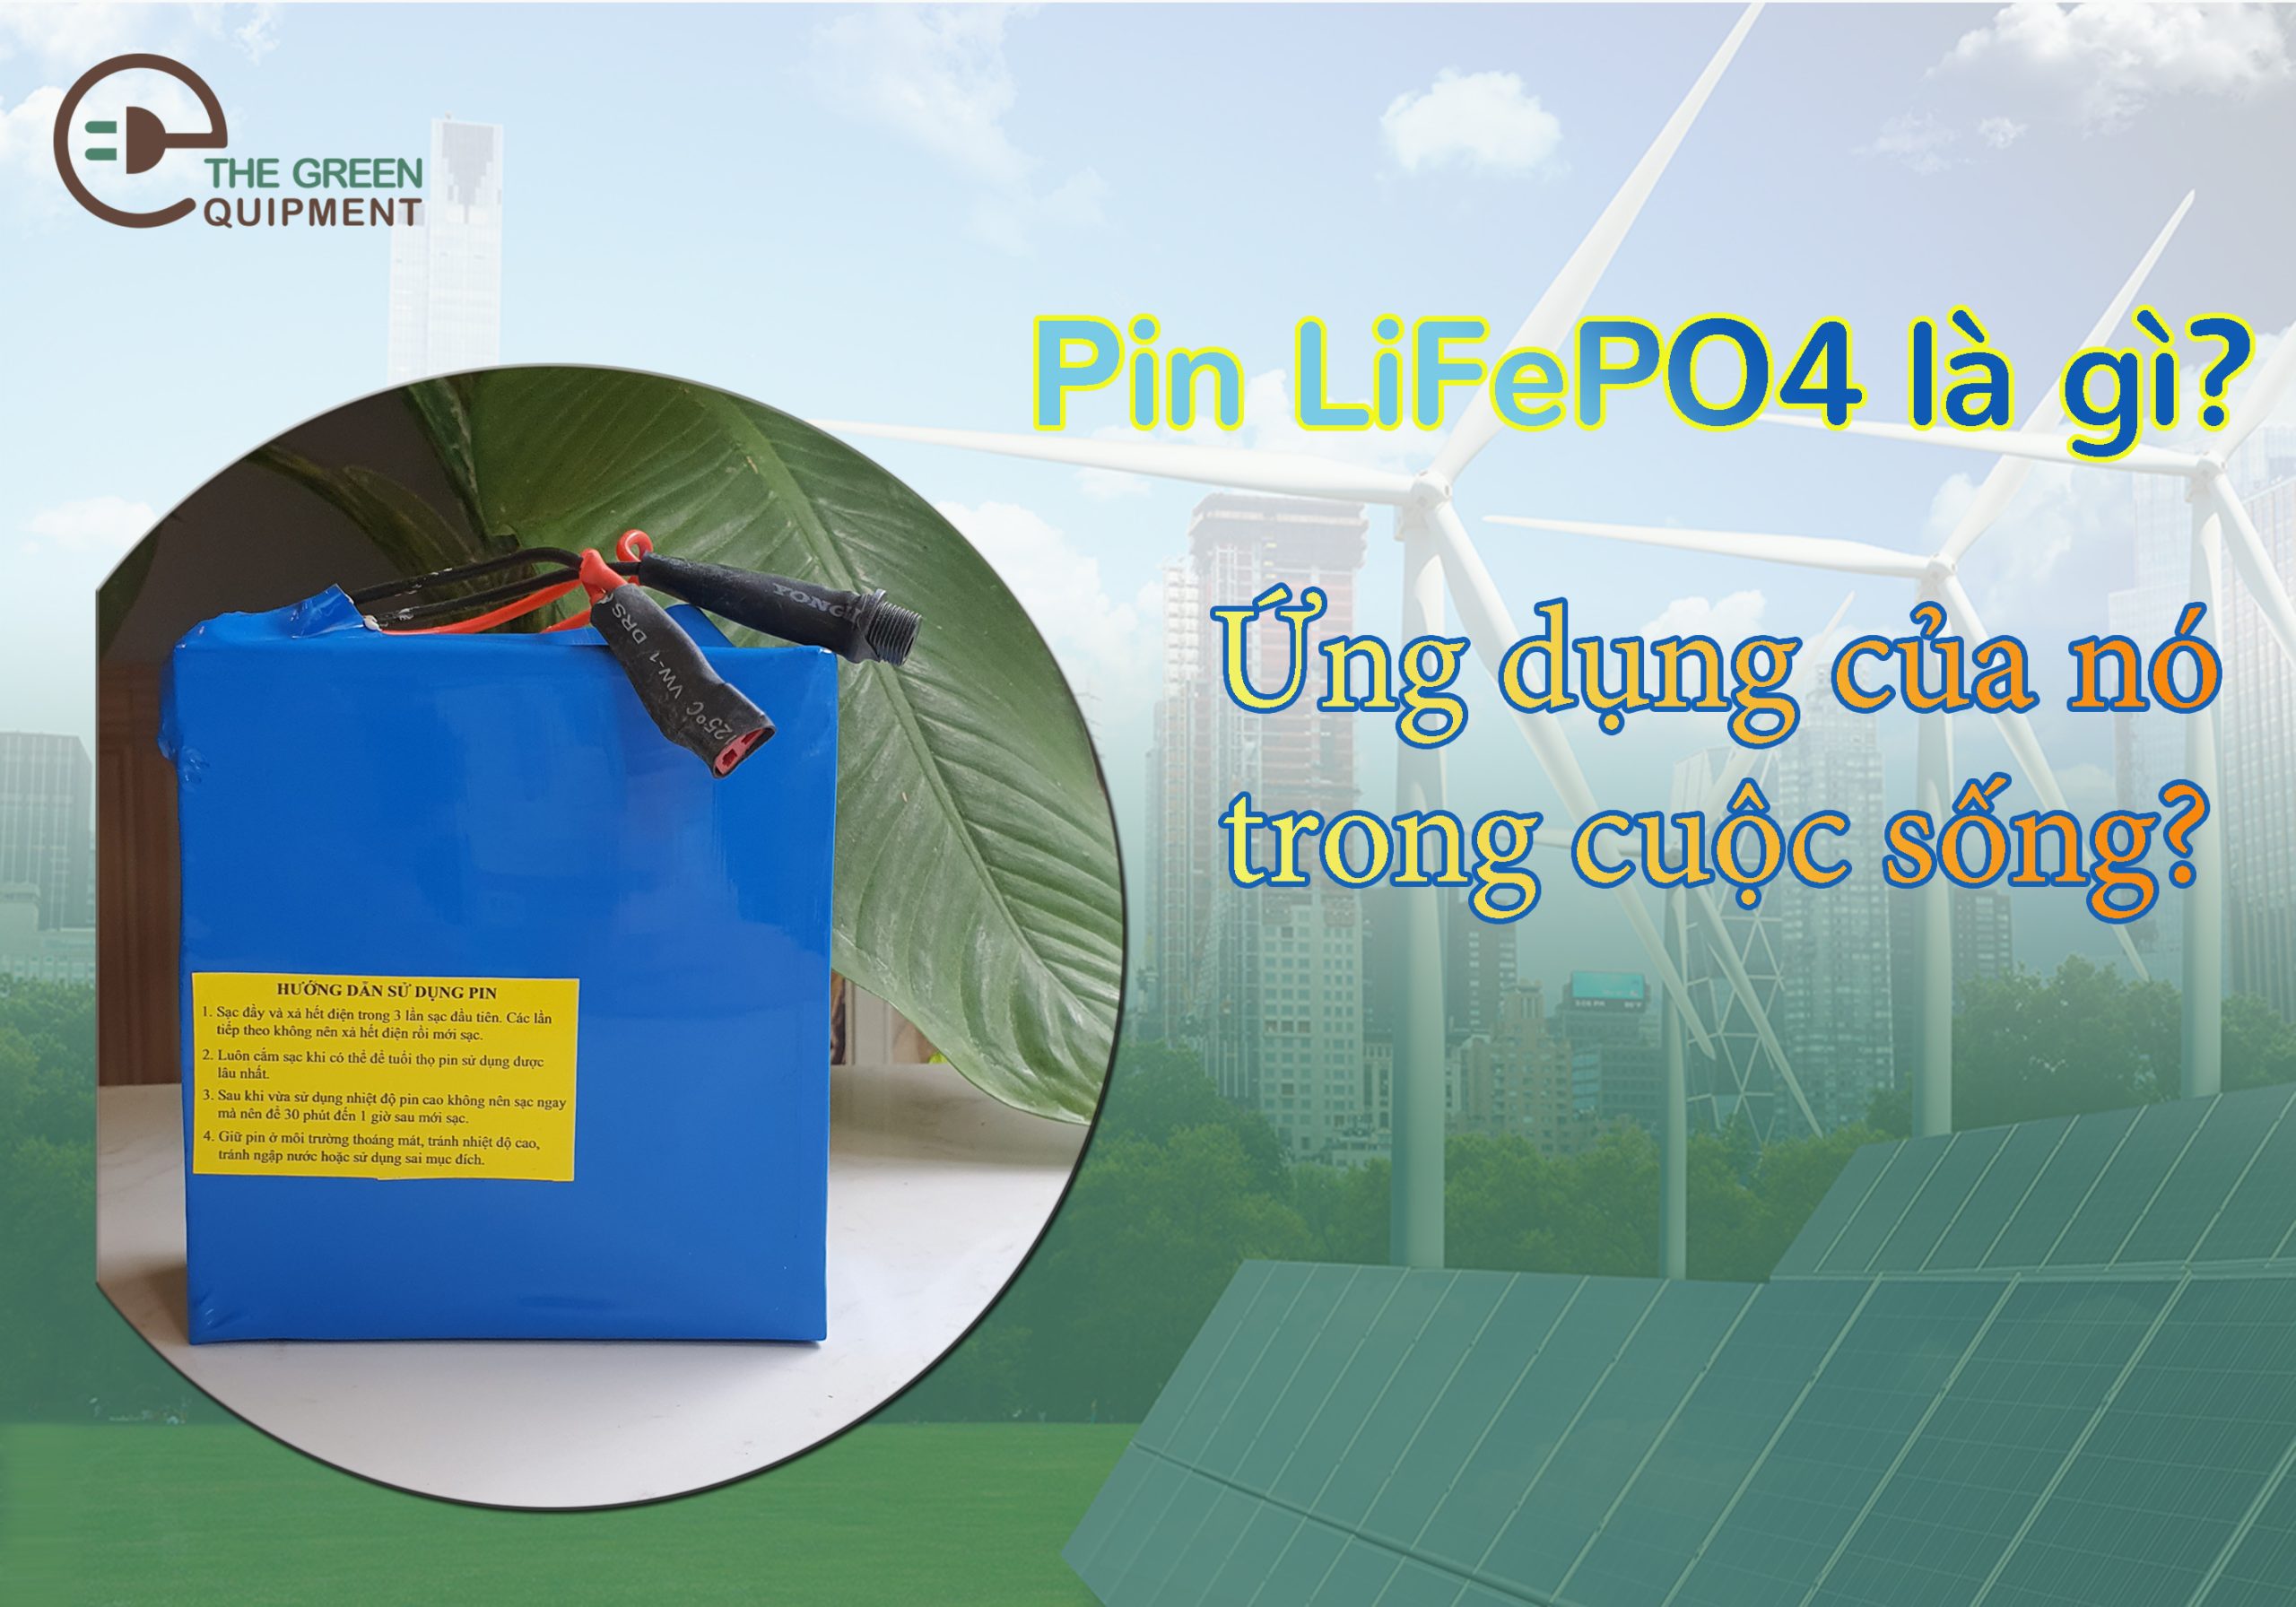 Pin LiFePO4 và ứng dụng của nó trong cuộc sống